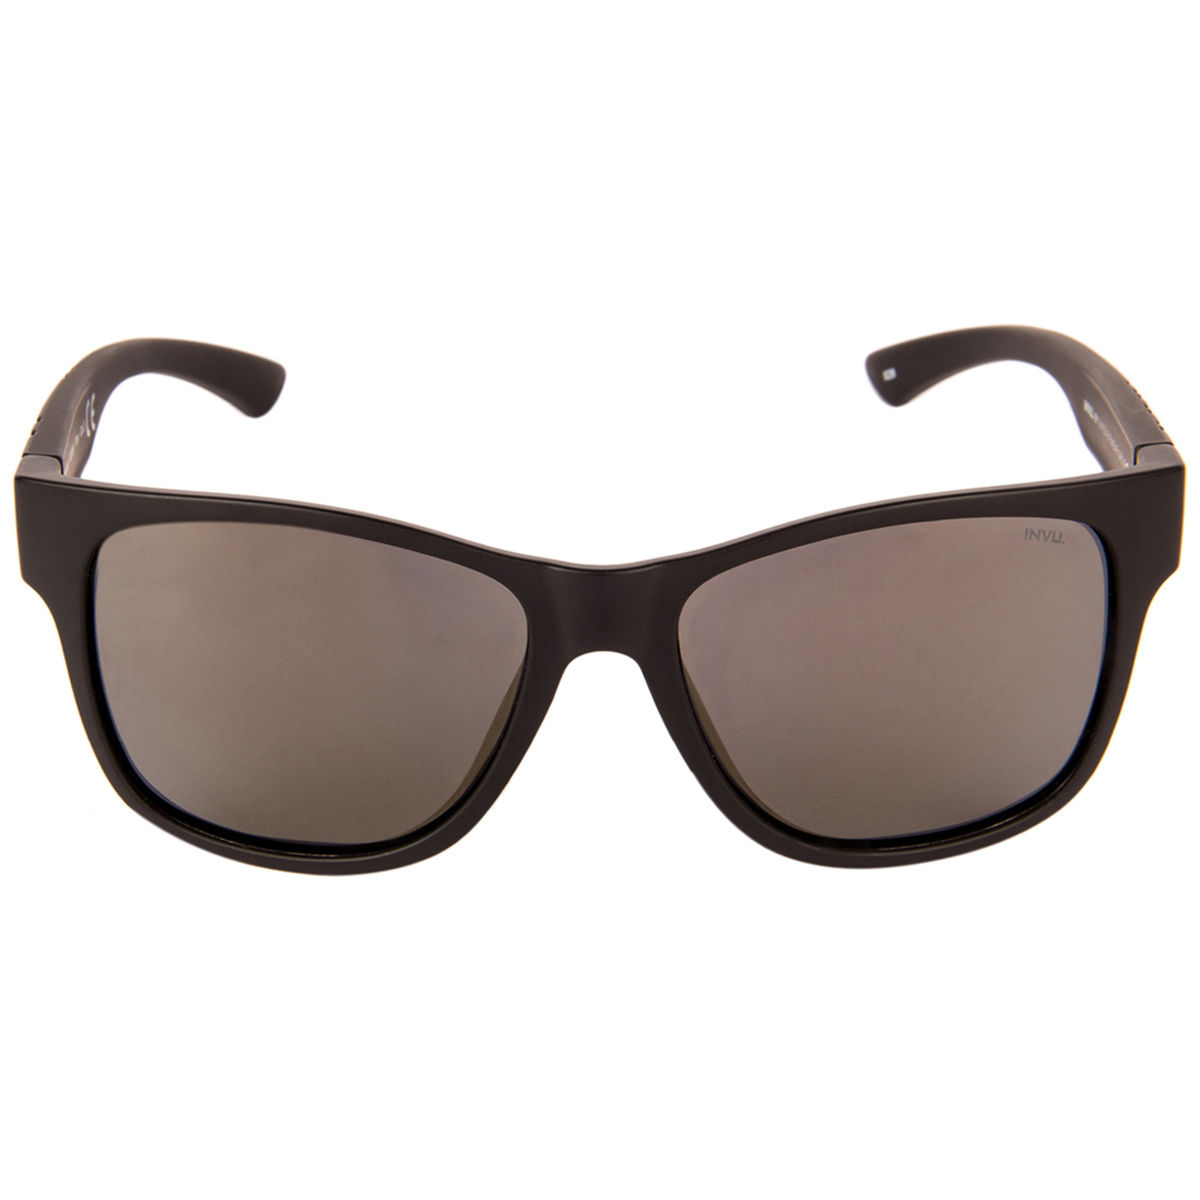 Invu Sunglasses Rectangular Sunglass With Golden Lens For Men